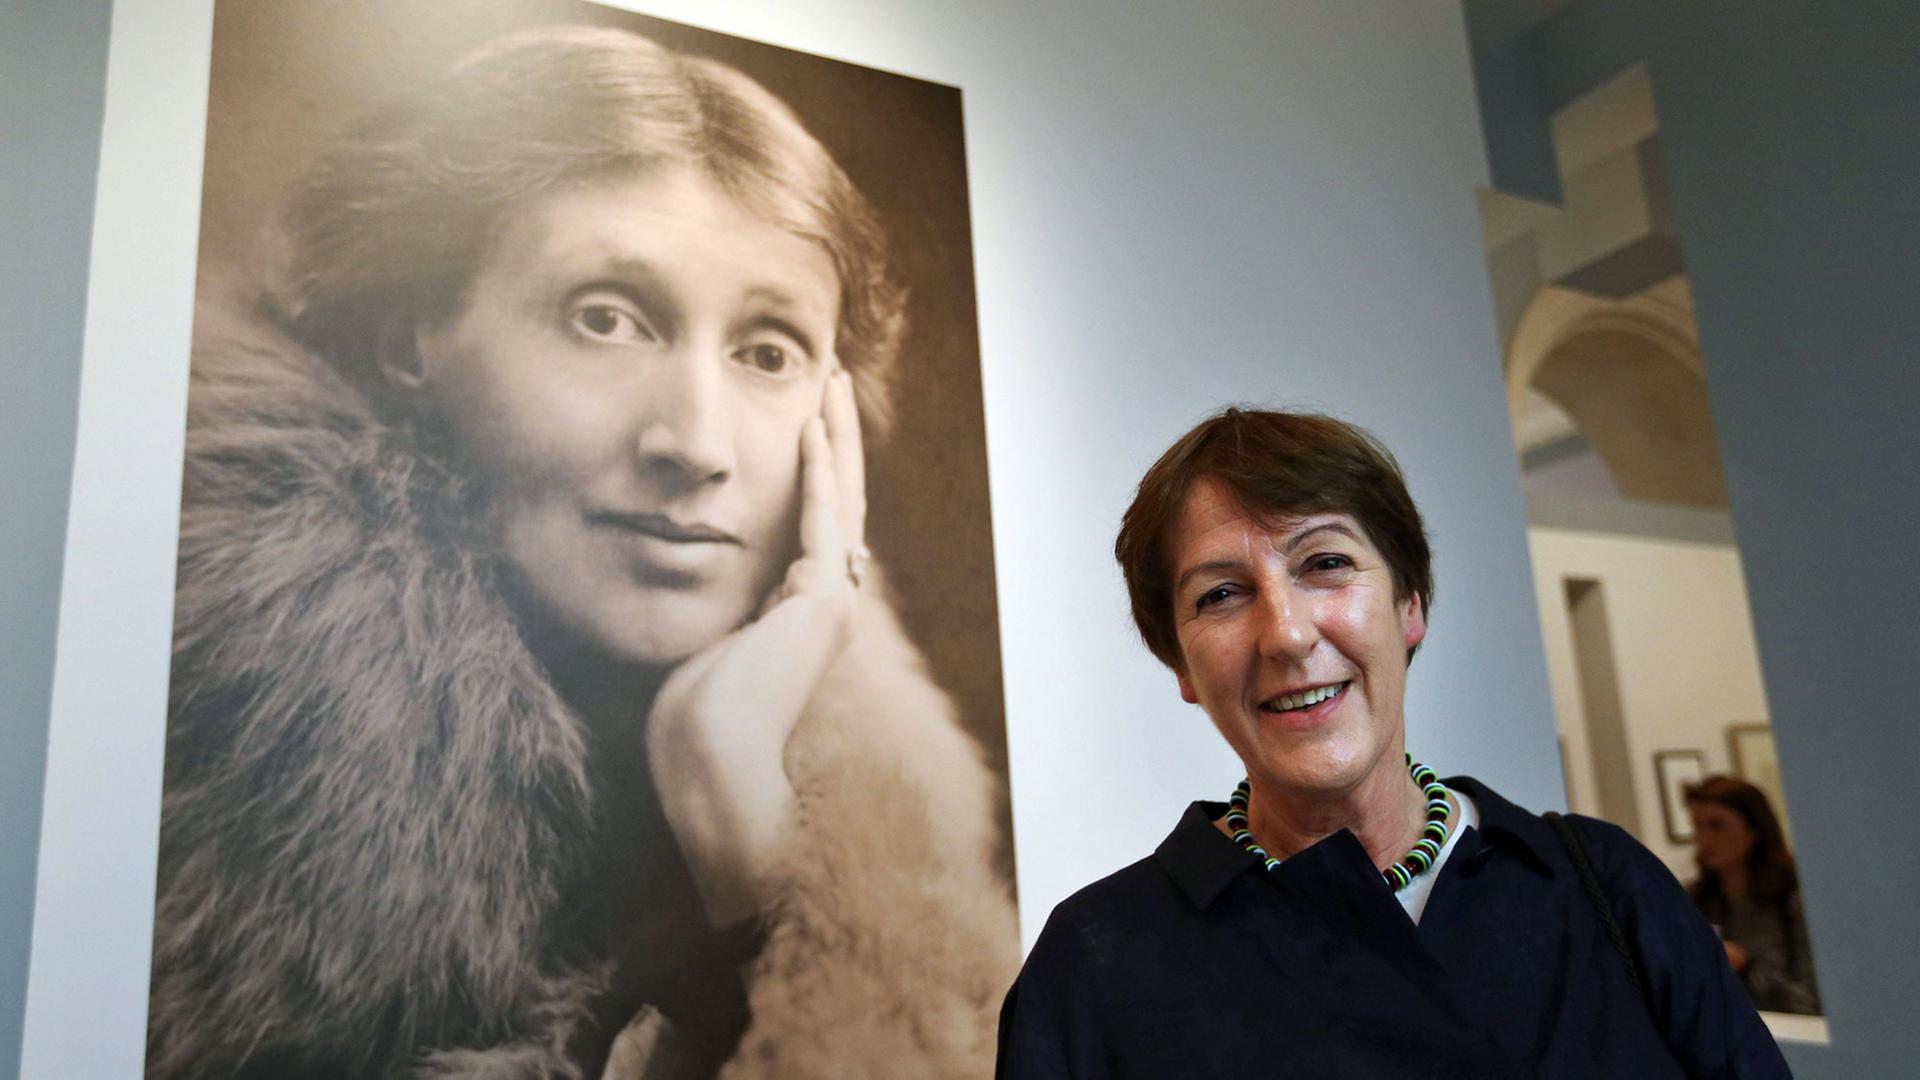 Die Kunsthistorikerin Frances Spalding neben einem Porträt der Schriftstellerin Virginia Woolf, aufgenommen am 9.7.2014 in der Virginia-Woolf-Ausstellung in der National Portrait Gallery in London, die von ihr kuratiert wurde.